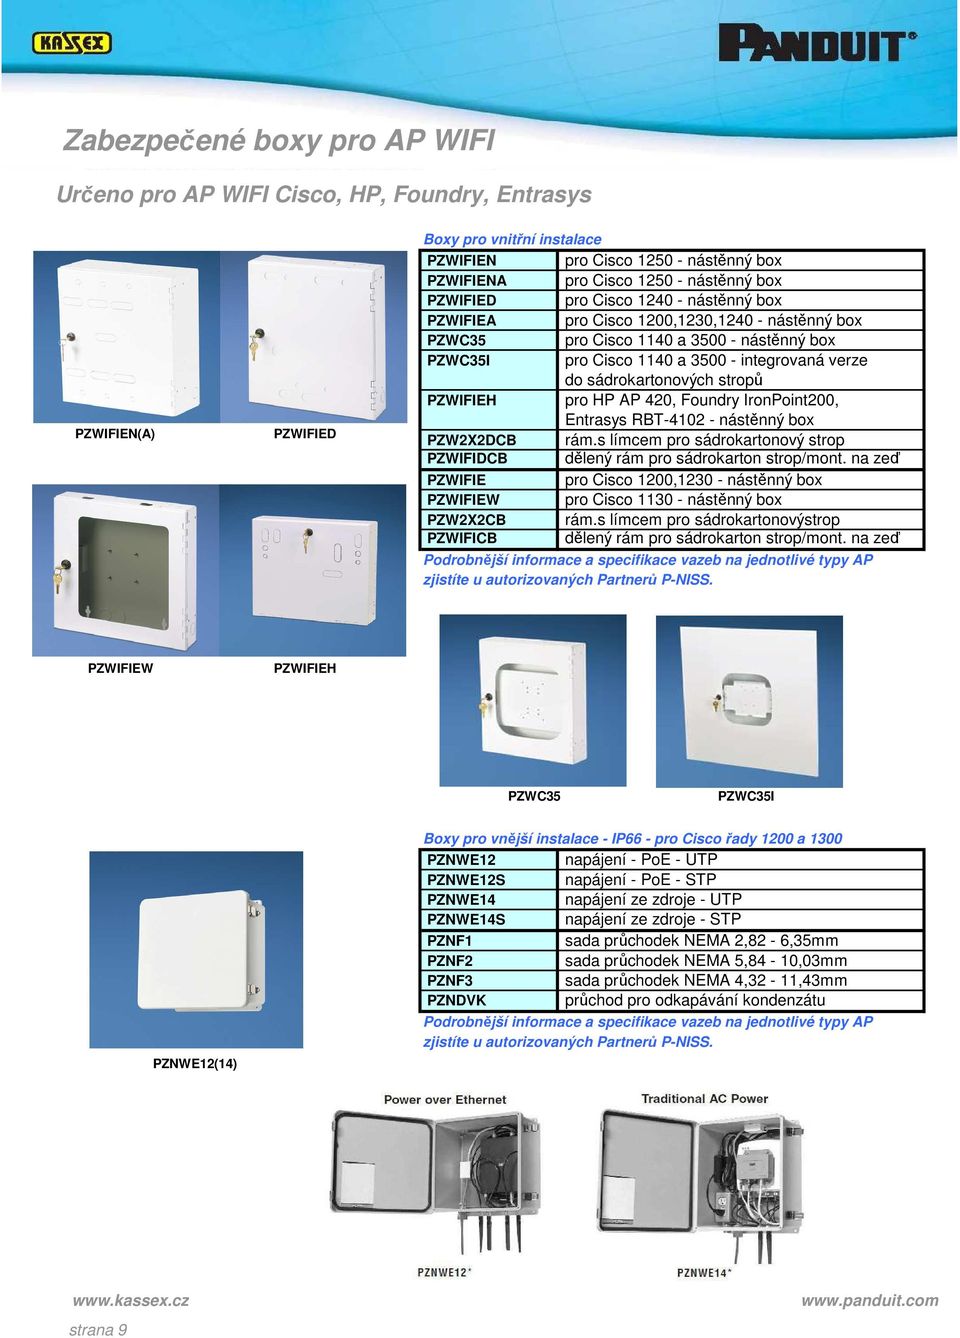 nástěnný box pro Cisco 1140 a 3500 - integrovaná verze do sádrokartonových stropů pro HP AP 420, Foundry IronPoint200, Entrasys RBT-4102 - nástěnný box rám.